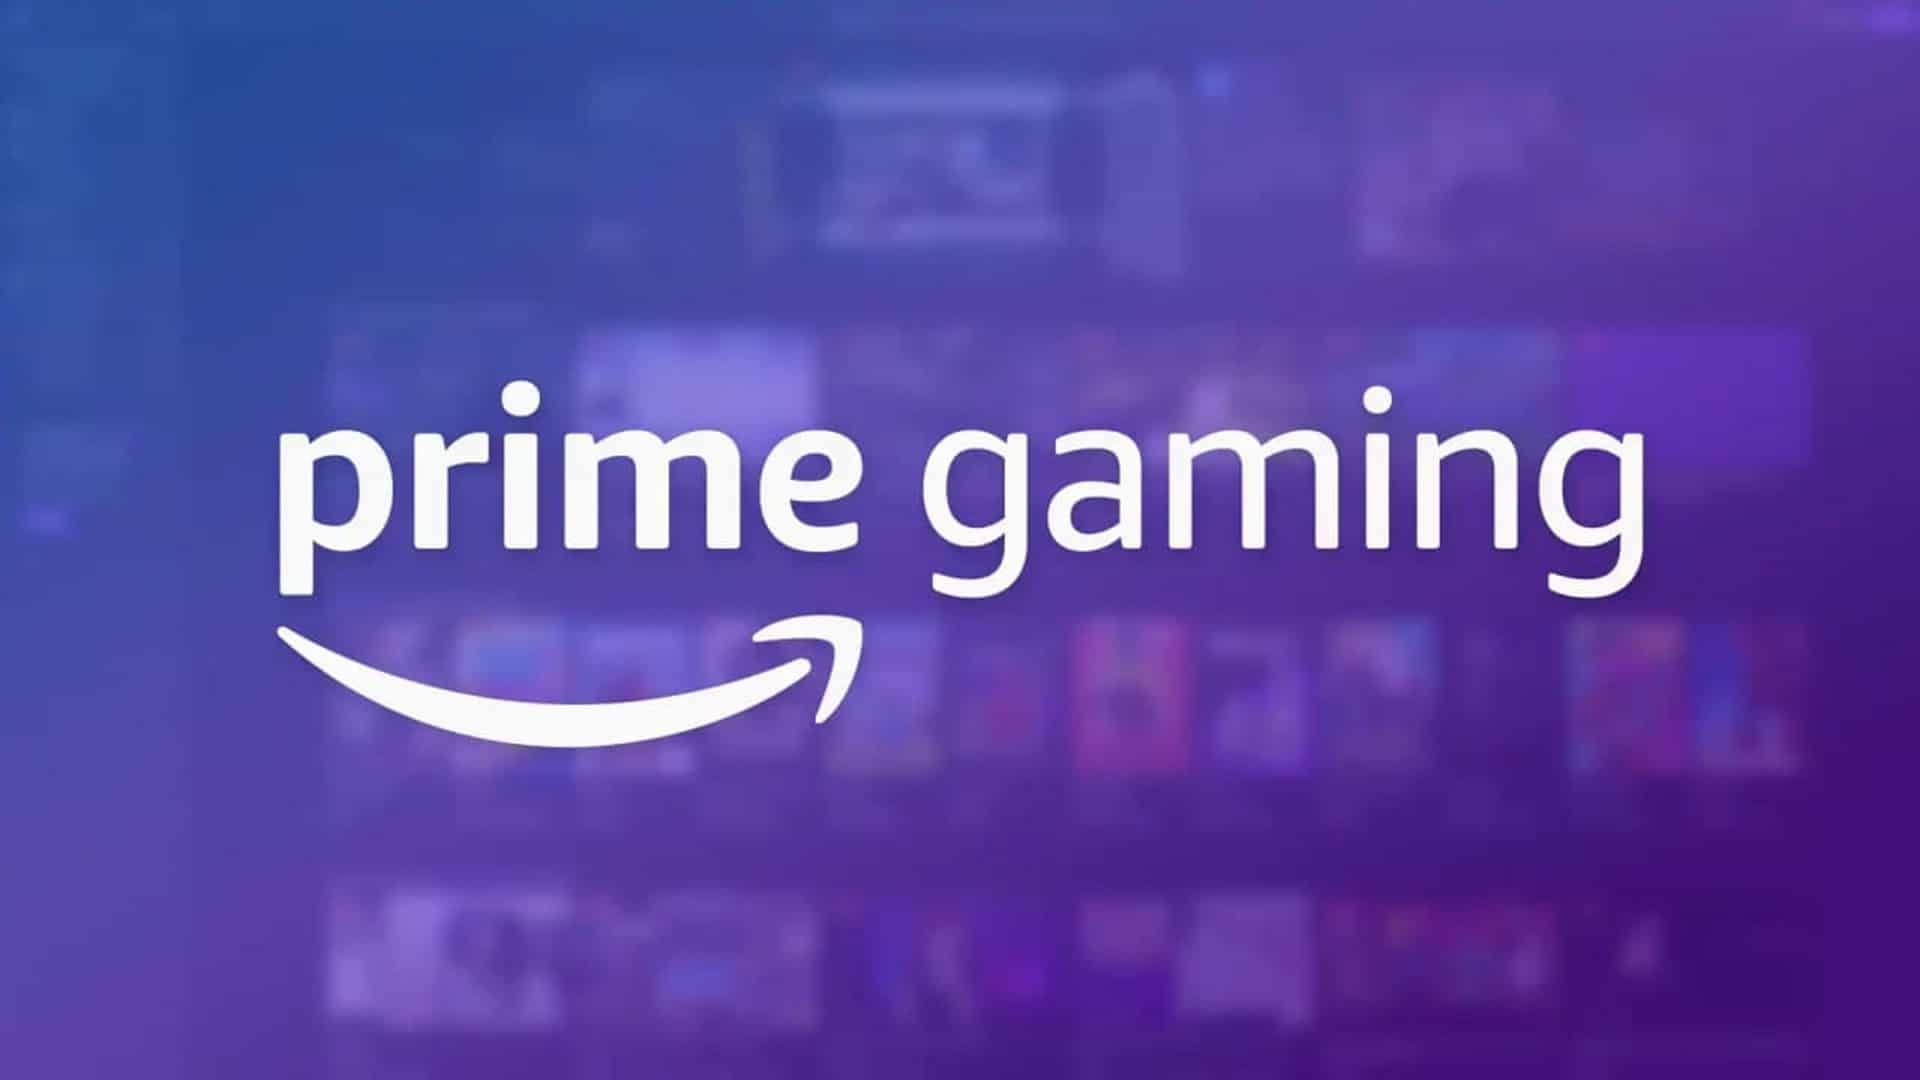 Amazon Prime Gaming anuncia sus juegos gratuitos para Enero, GamersRD